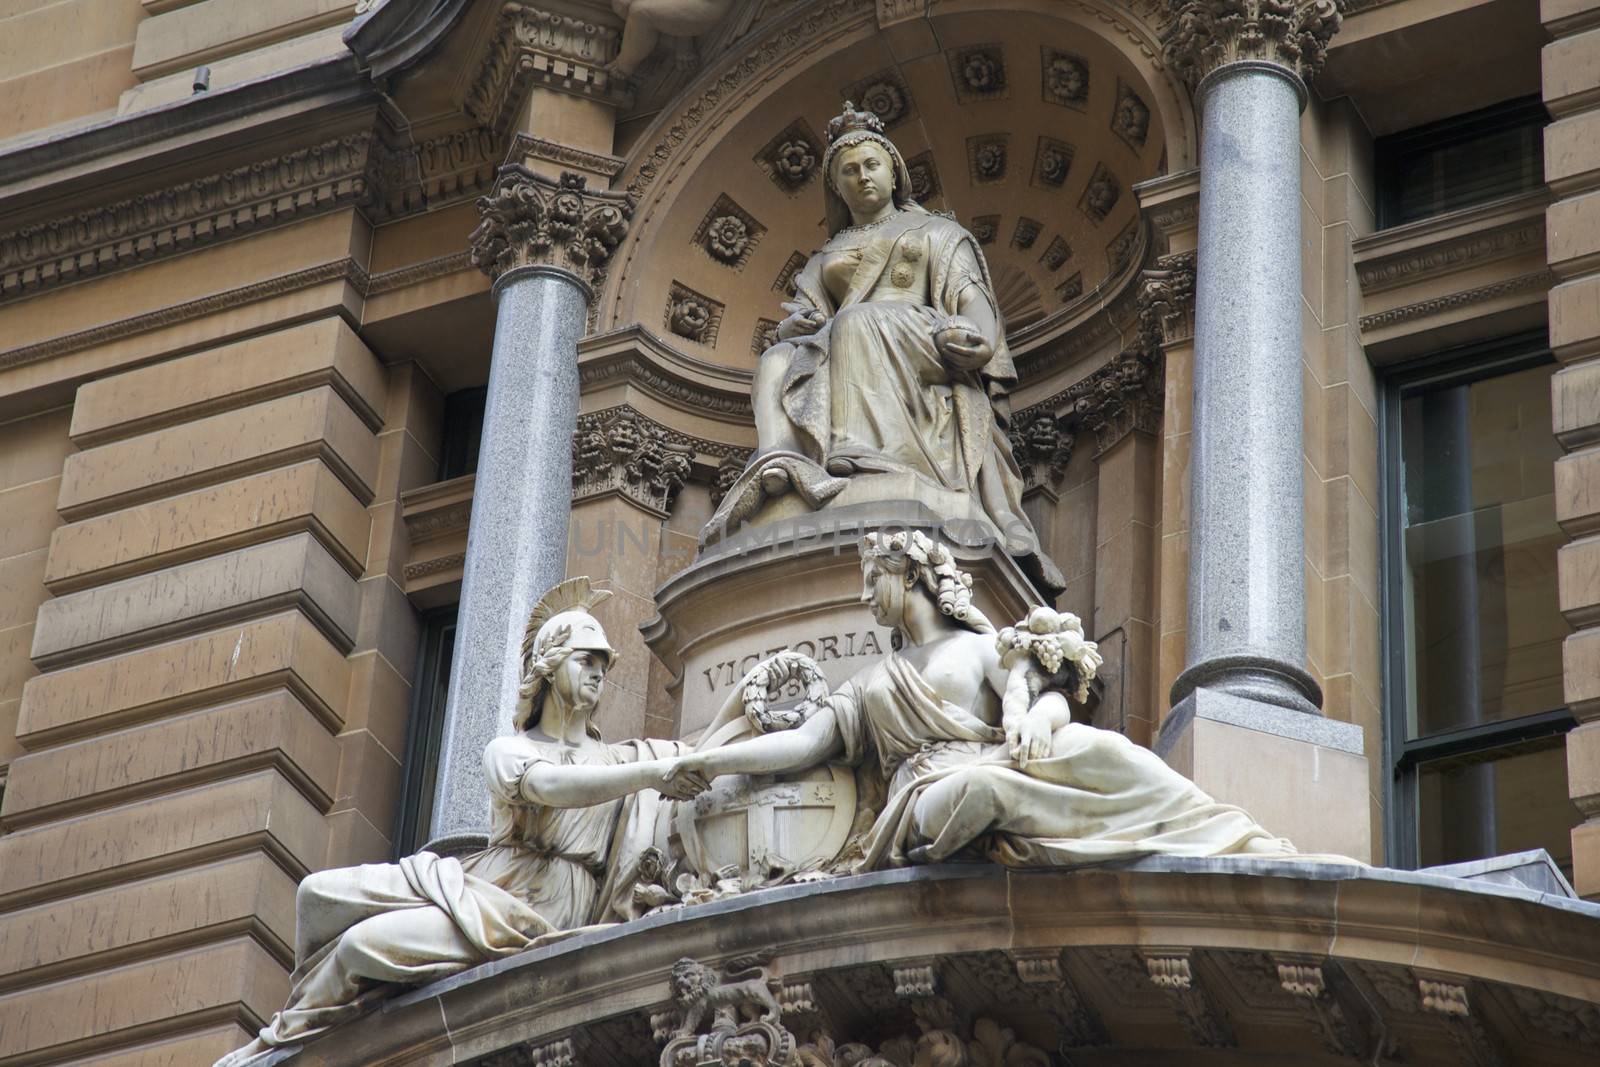 Queen Victoria Marble Sculpture